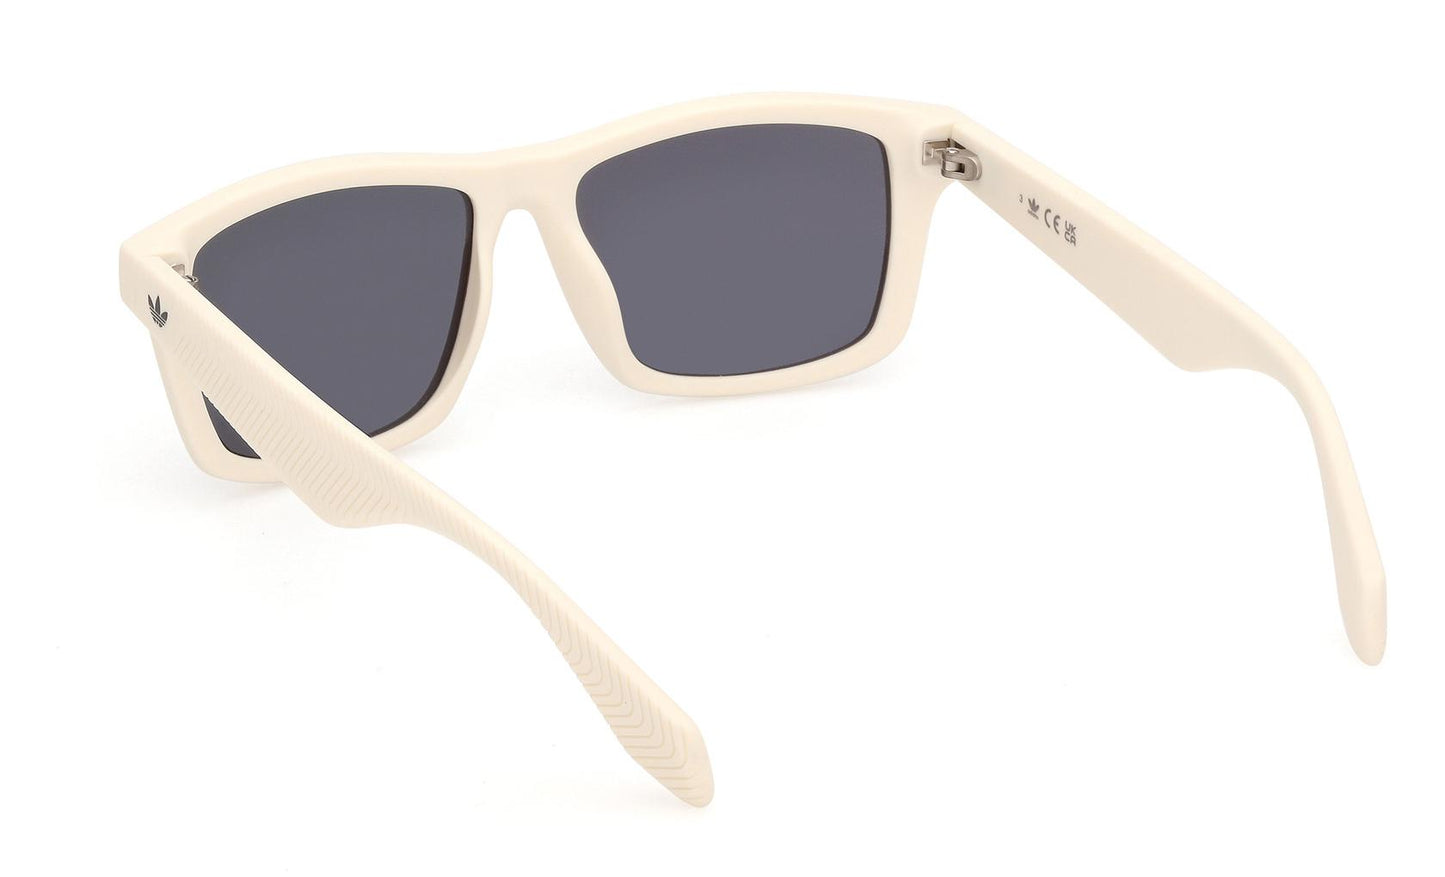 Adidas Originals Sunglasses OR0115 21A